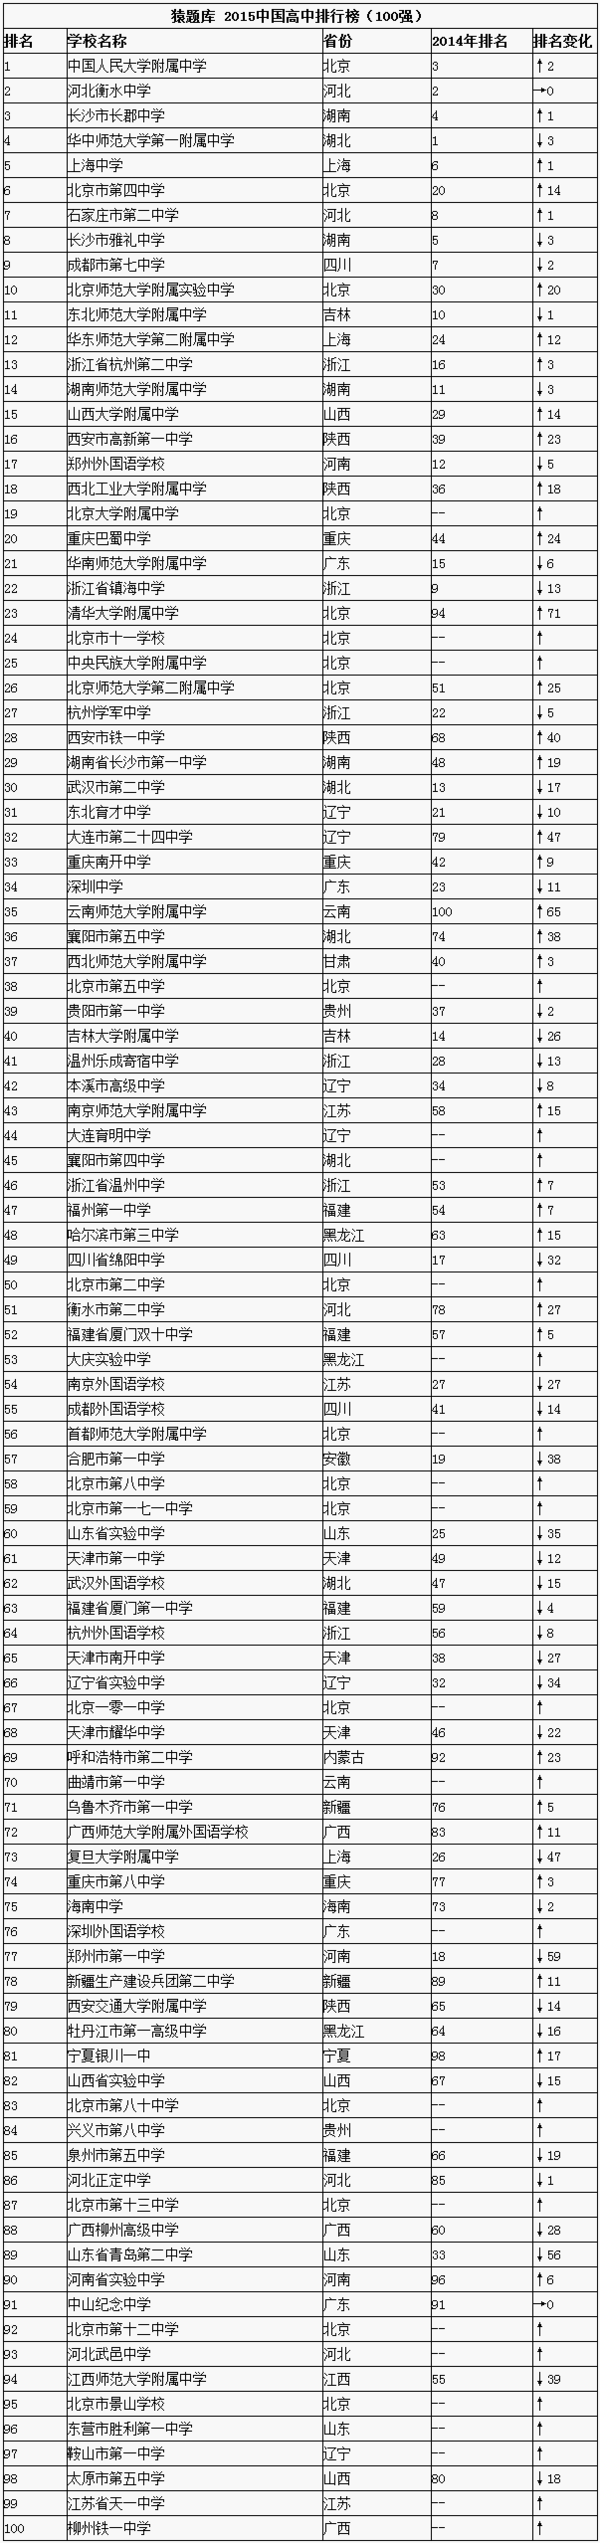 2015中国高中排行榜前100强